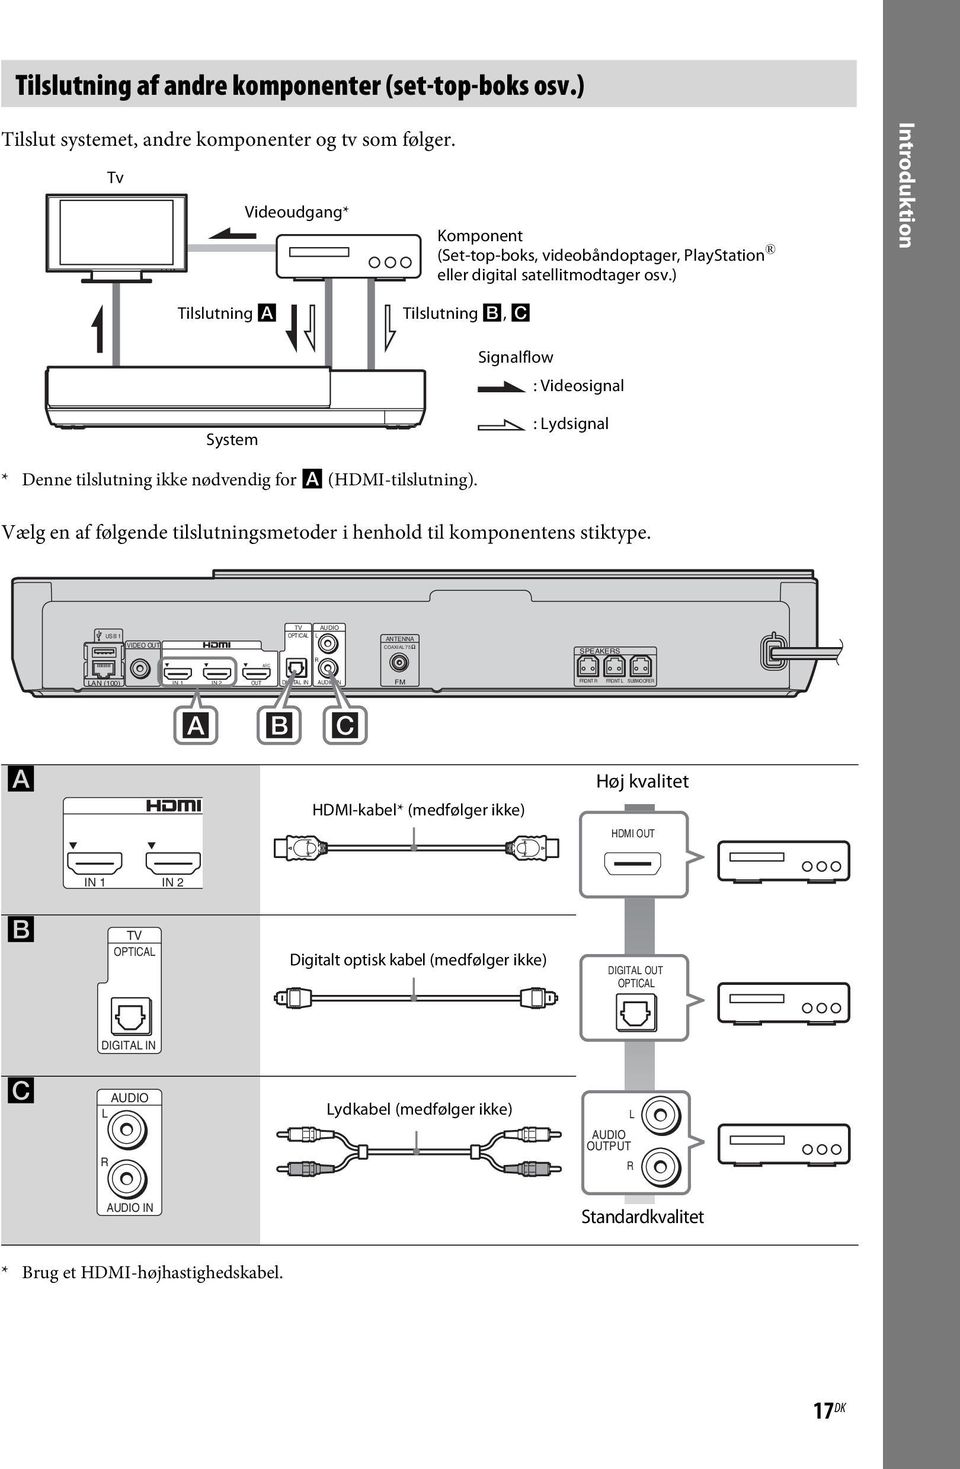 ) Introduktion Tilslutning A Tilslutning B, C Signalflow : Videosignal System : Lydsignal * Denne tilslutning ikke nødvendig for A (HDMI-tilslutning).